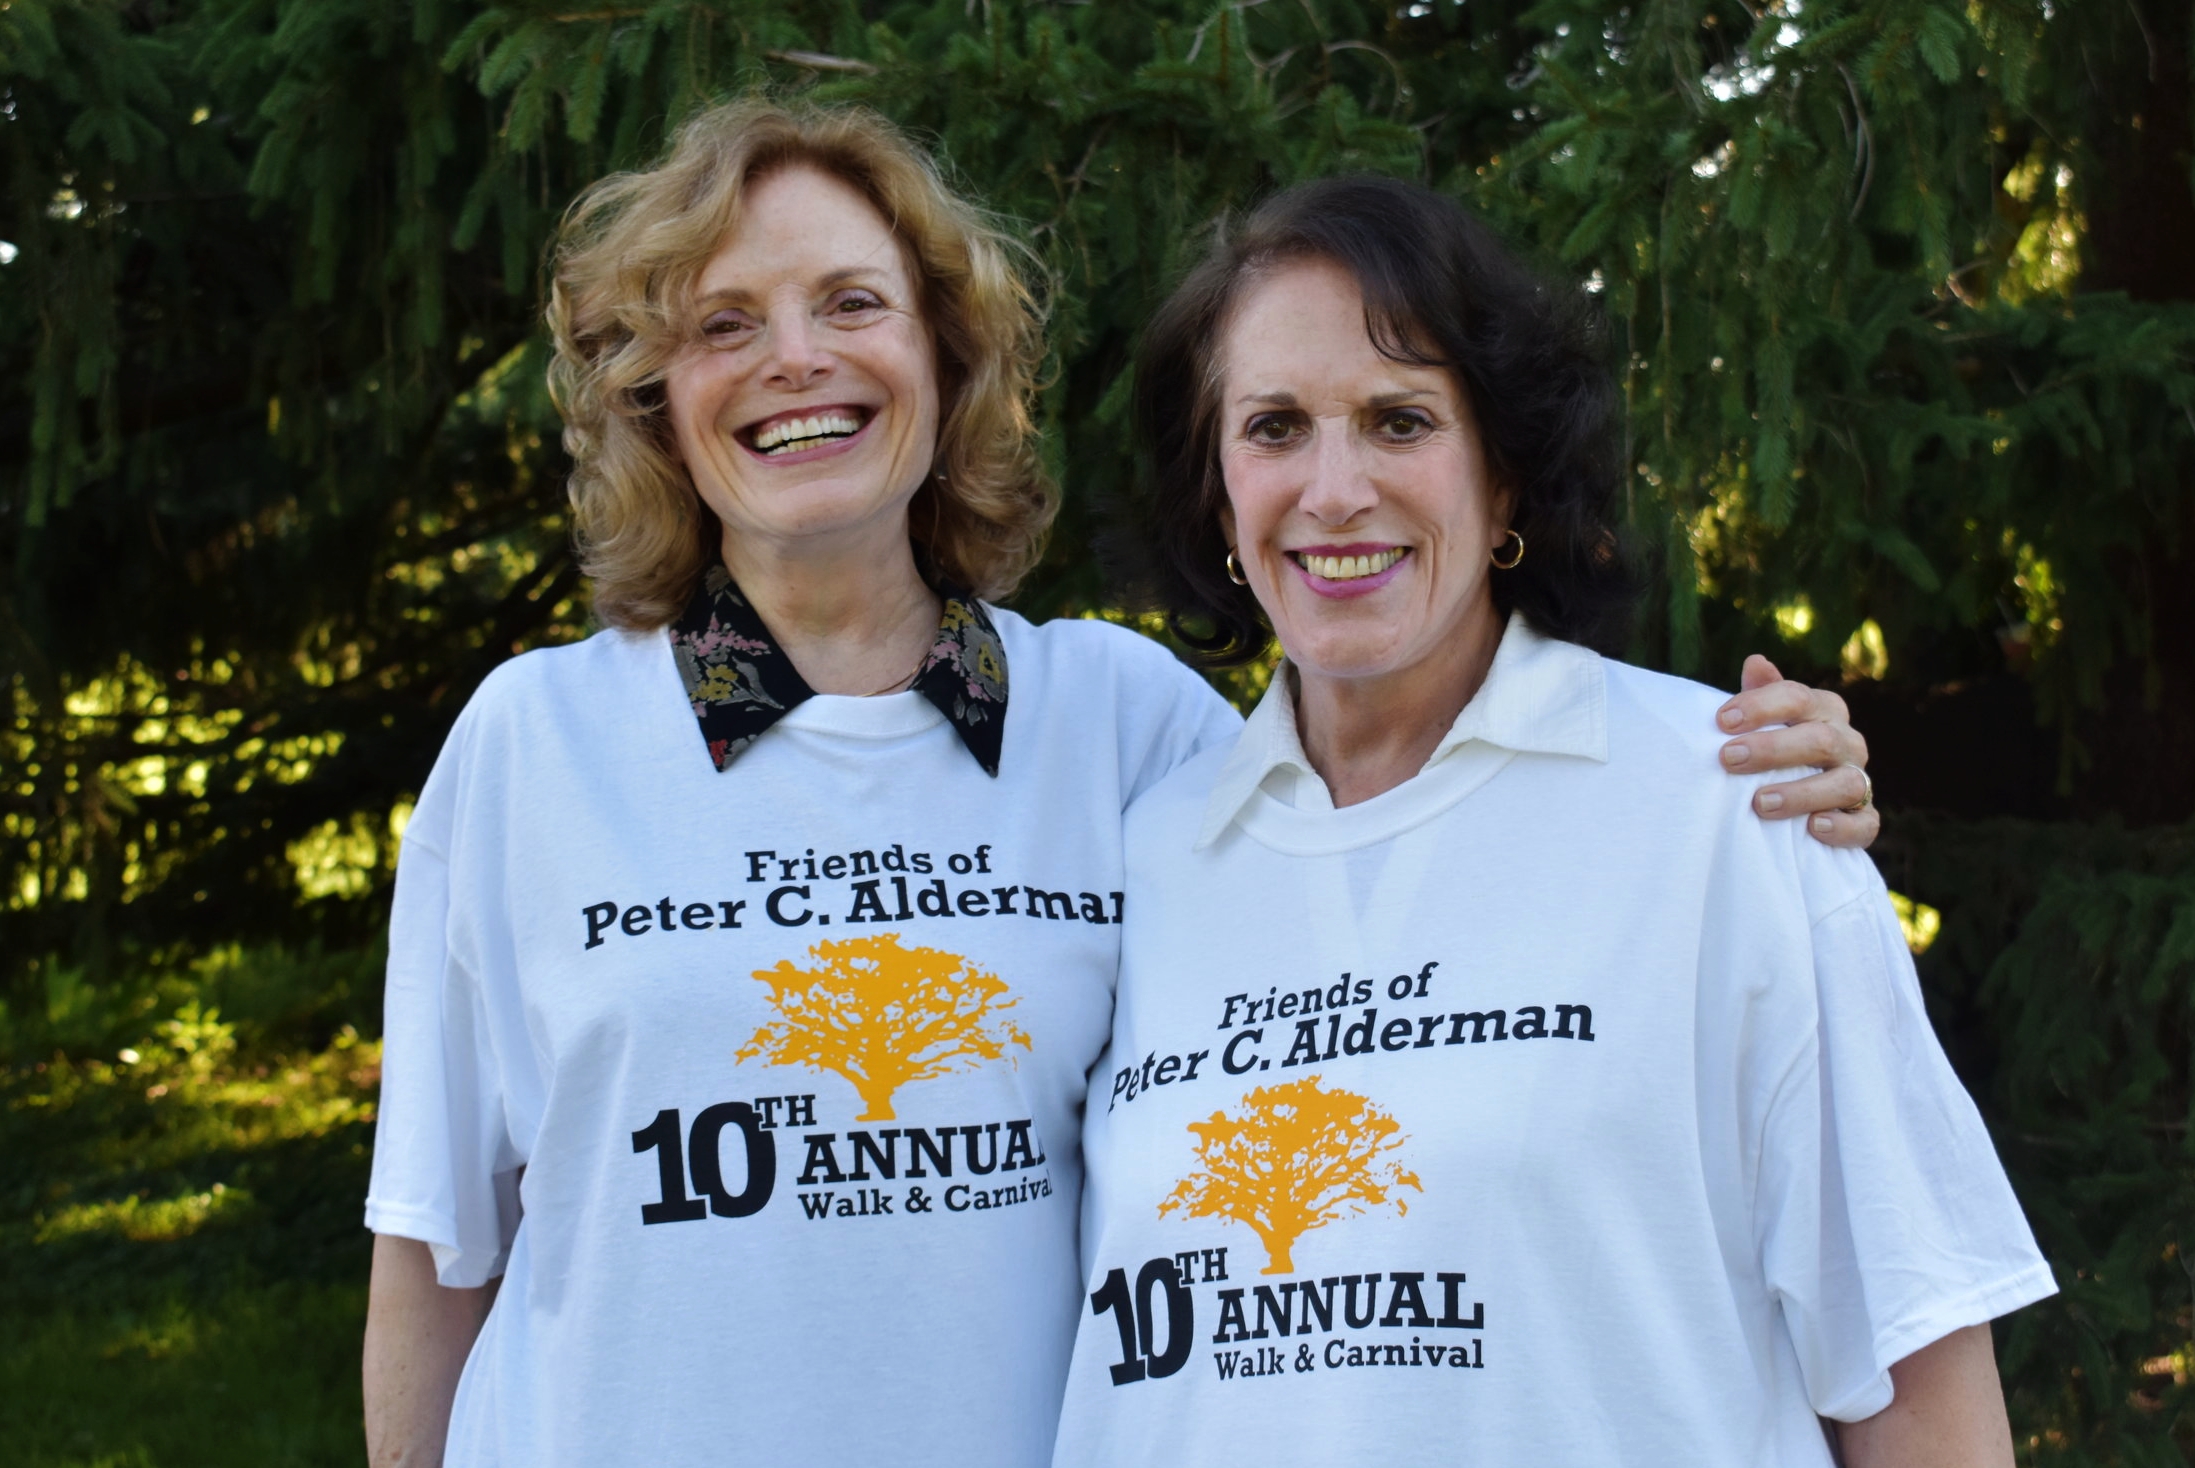 Friends of Peter C. Alderman Charity Walk (9/12)